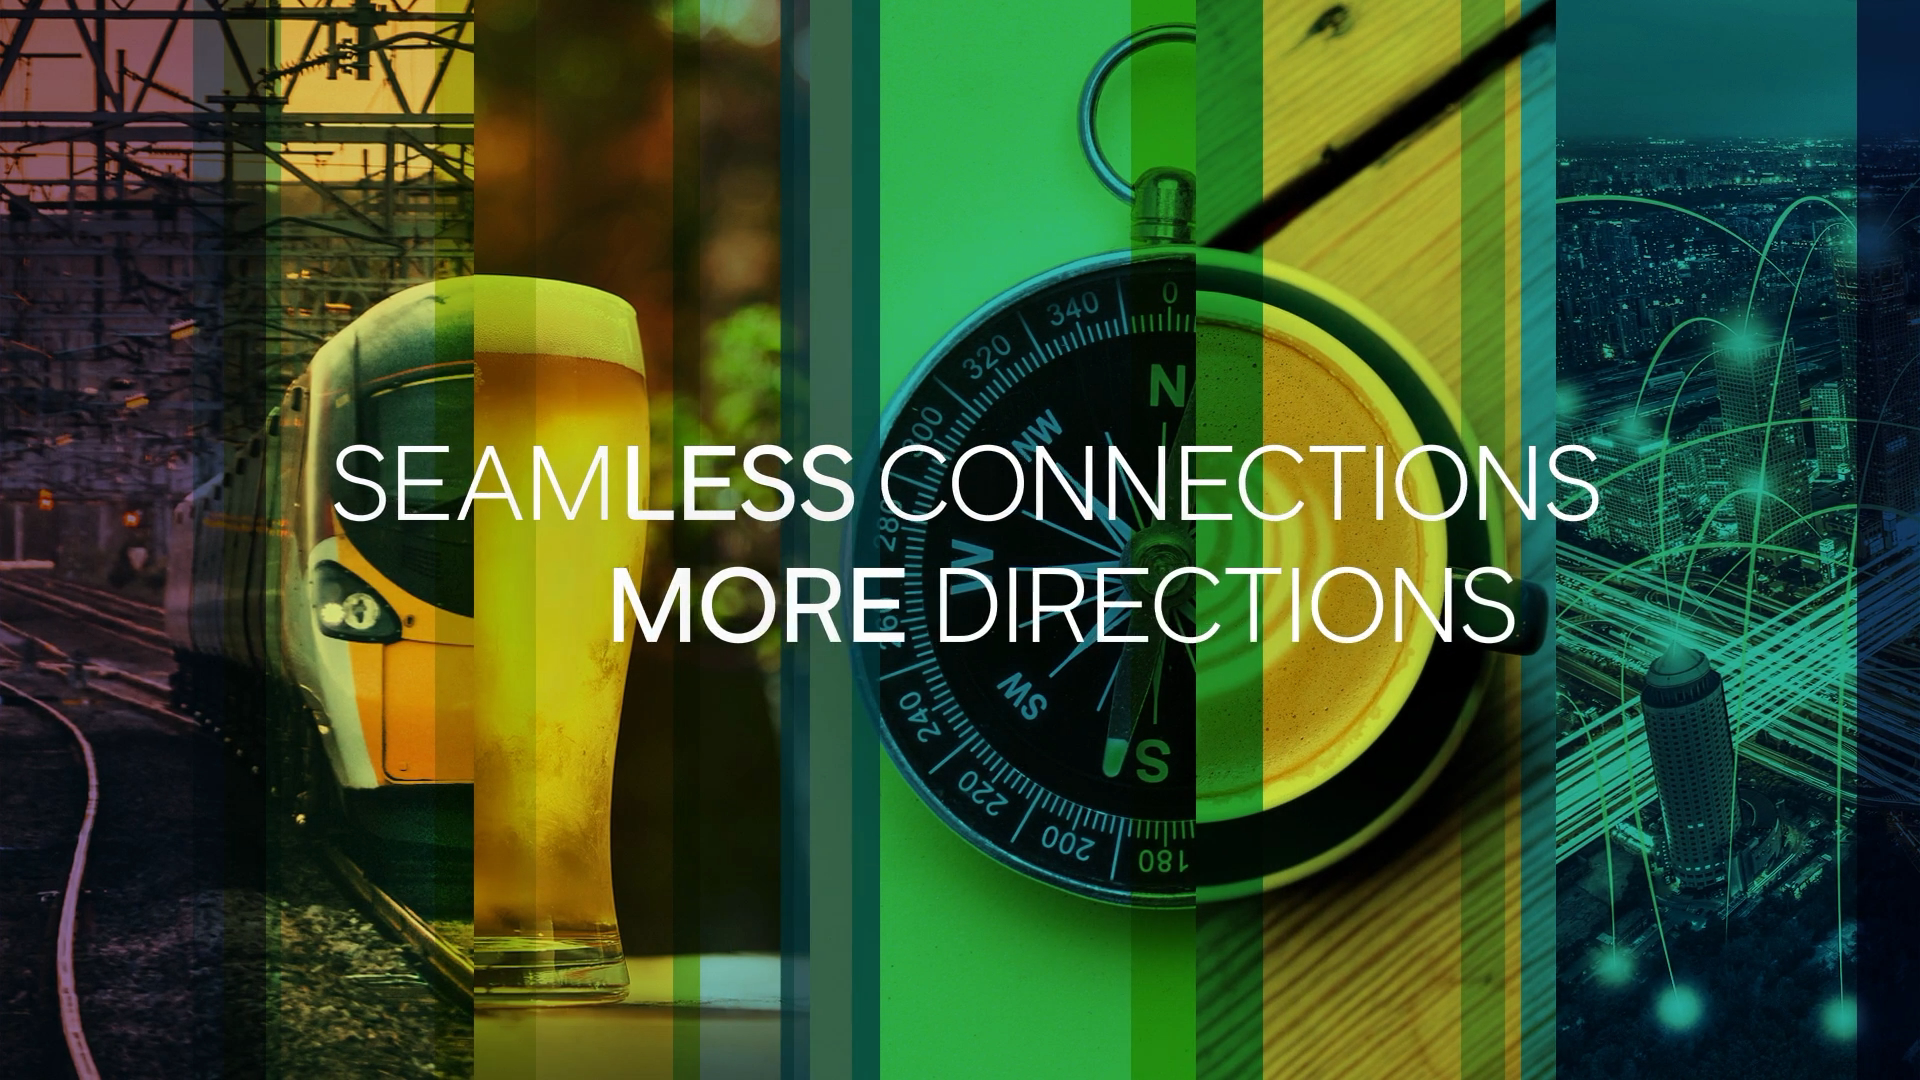 Imagen diseñada por Transmission con el siguiente texto superpuesto: "Seamless connections, more directions" (conexiones continuas, más direcciones)